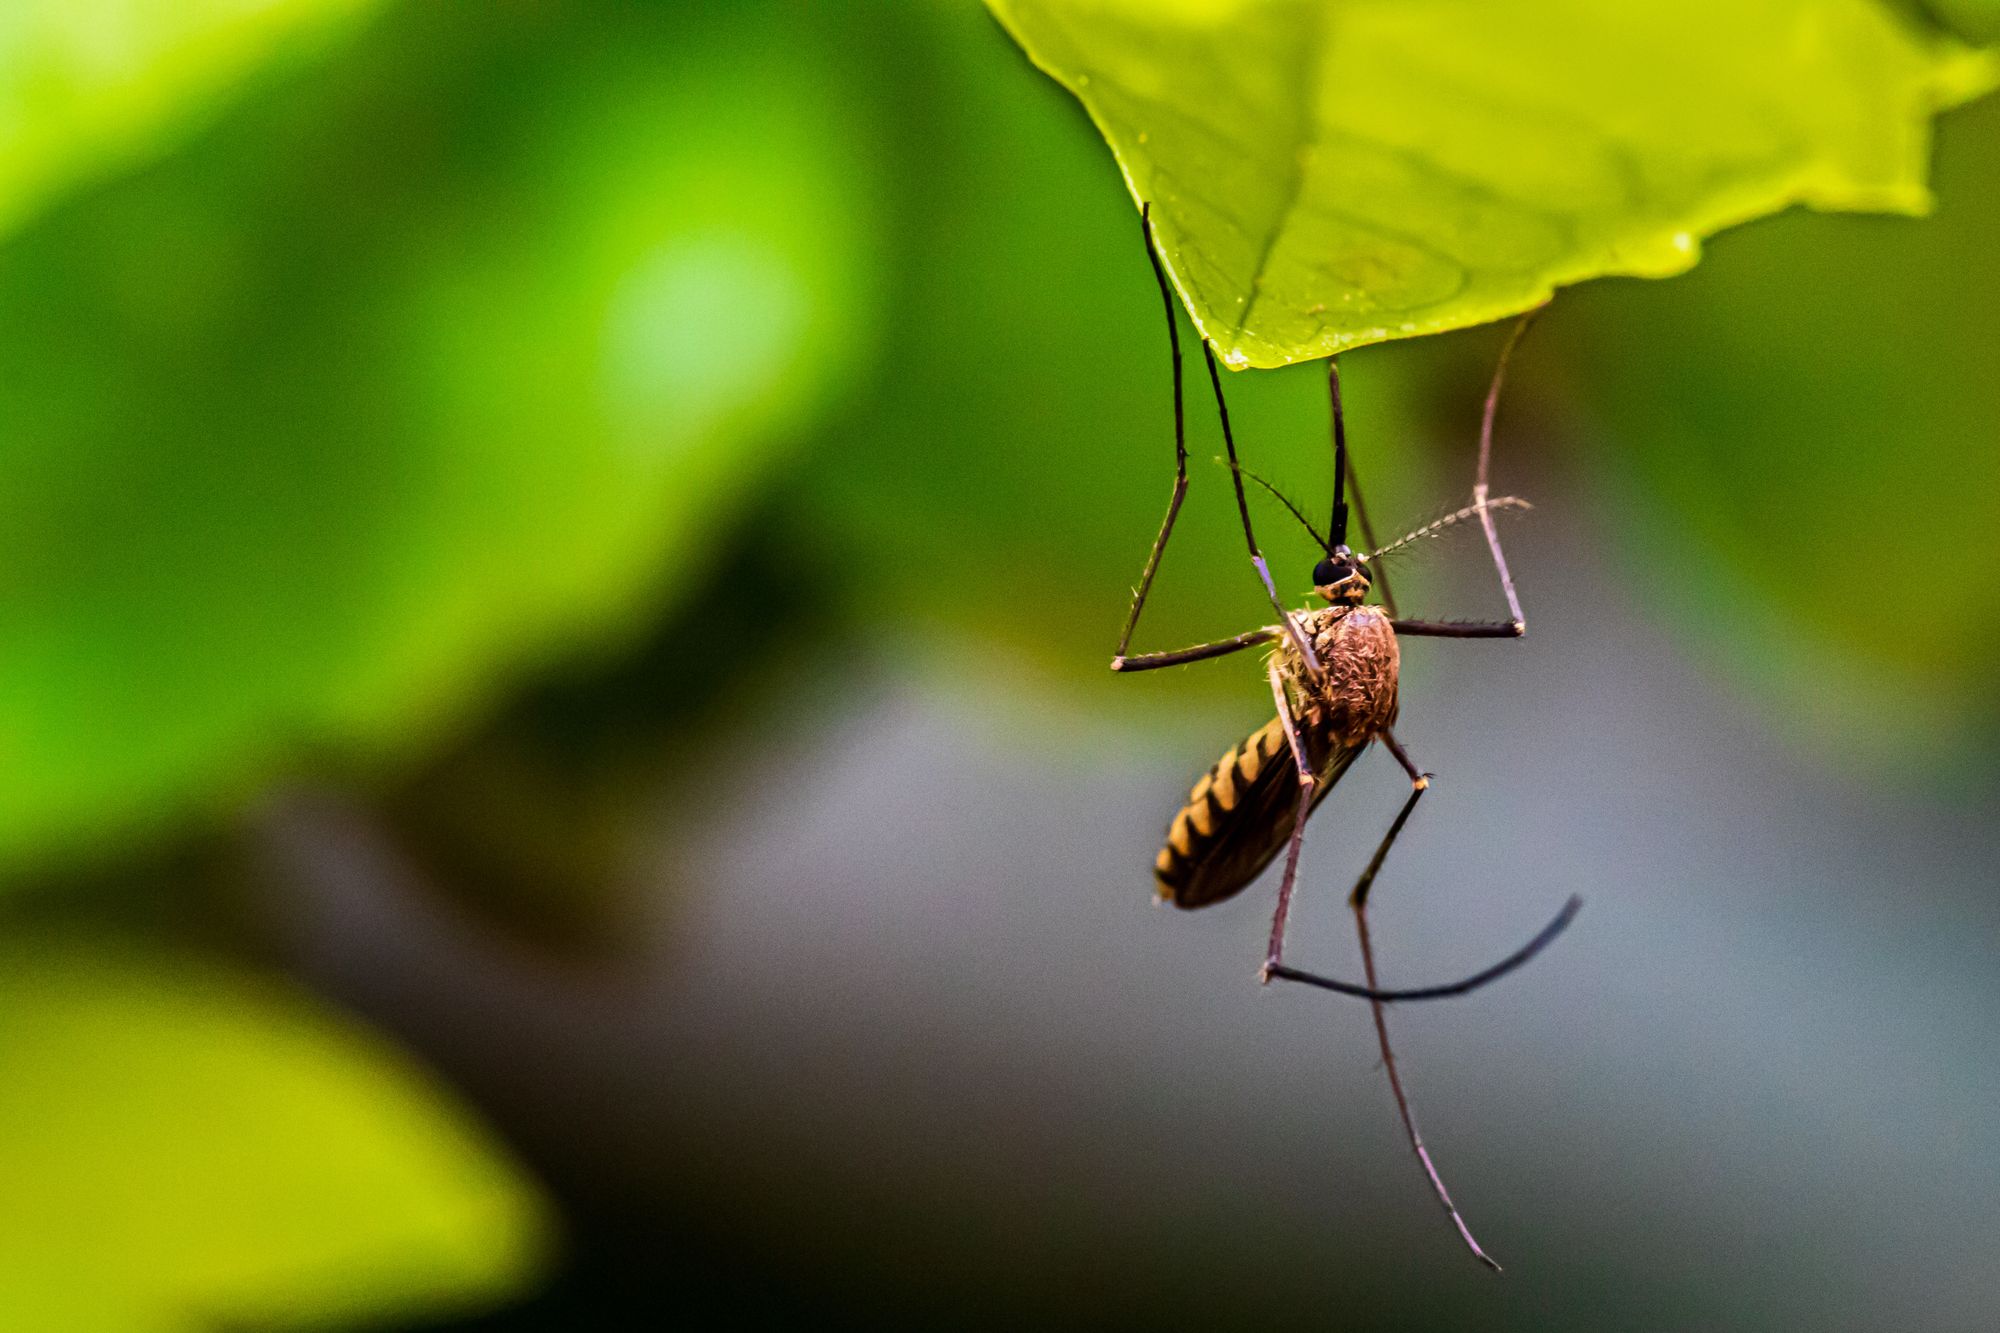 Lék proti plasmodiím, způsobujícím malárii, má zastavit schopnost parazitů unikat imunitní odpovědi člověka